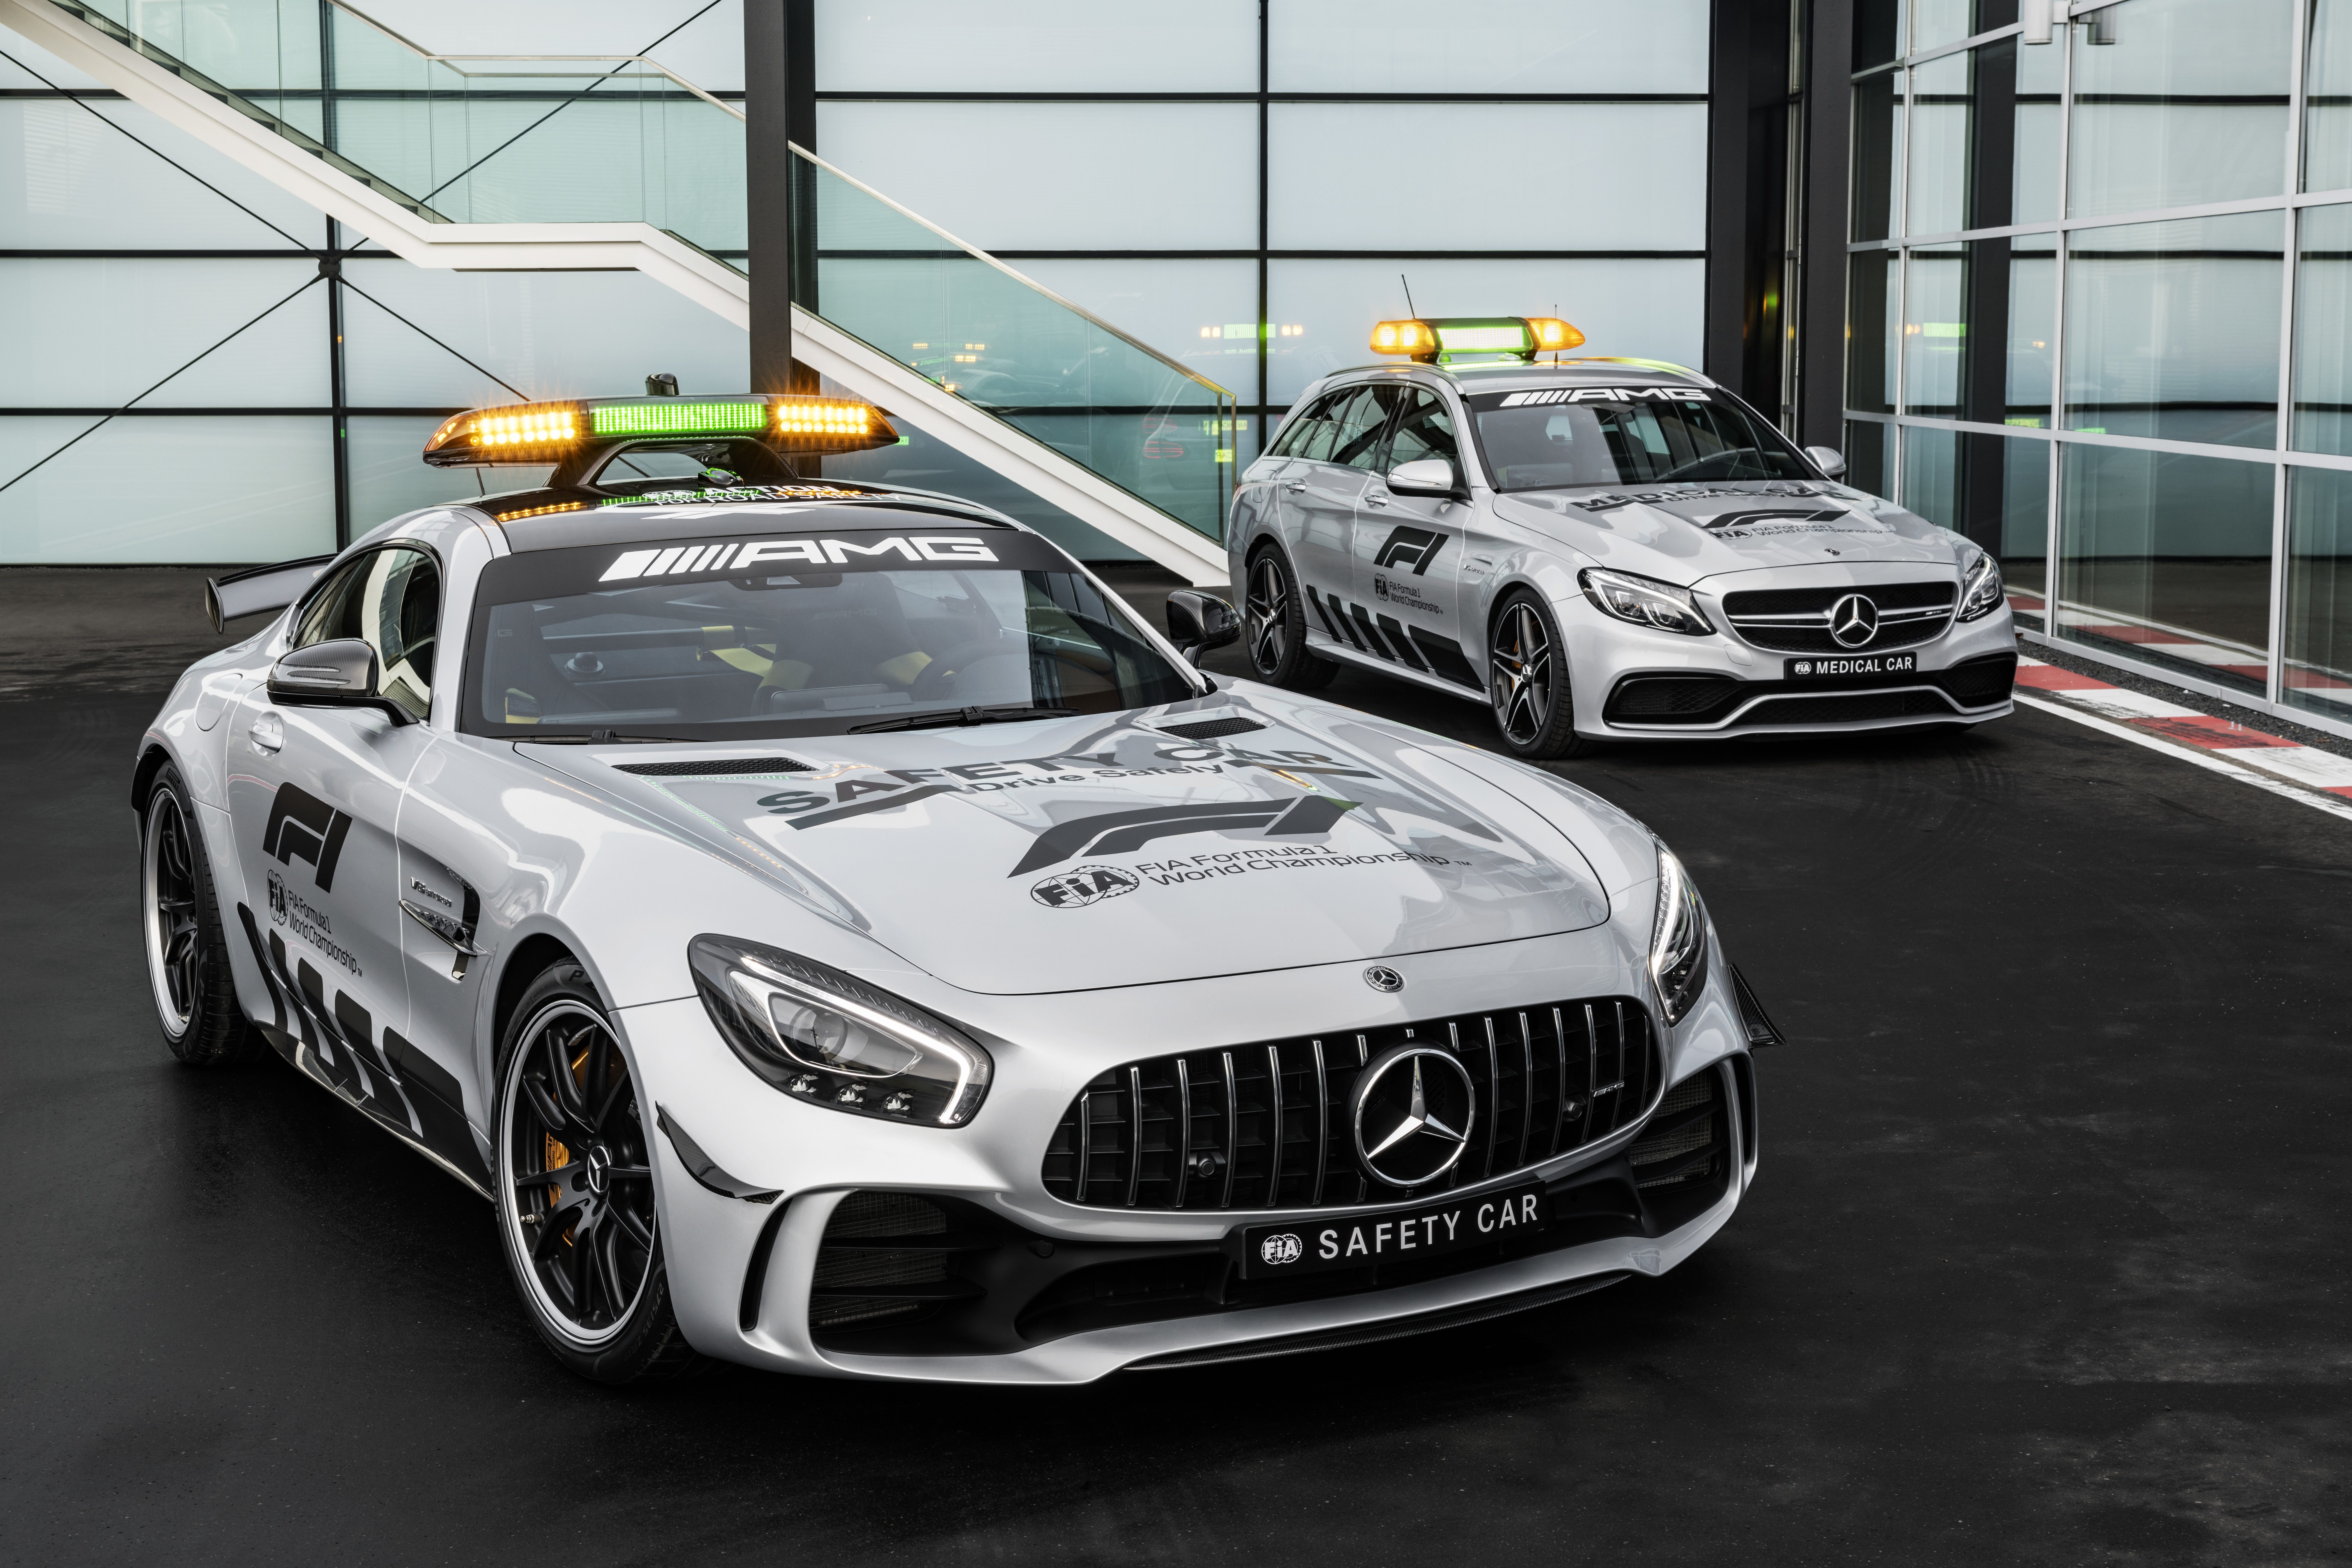 Автомобиль безопасности формула. Mercedes AMG gt f1. Mercedes AMG gt f1 Safety car. 2018 Mercedes-AMG gt r f1. Mercedes AMG Safety car f1.